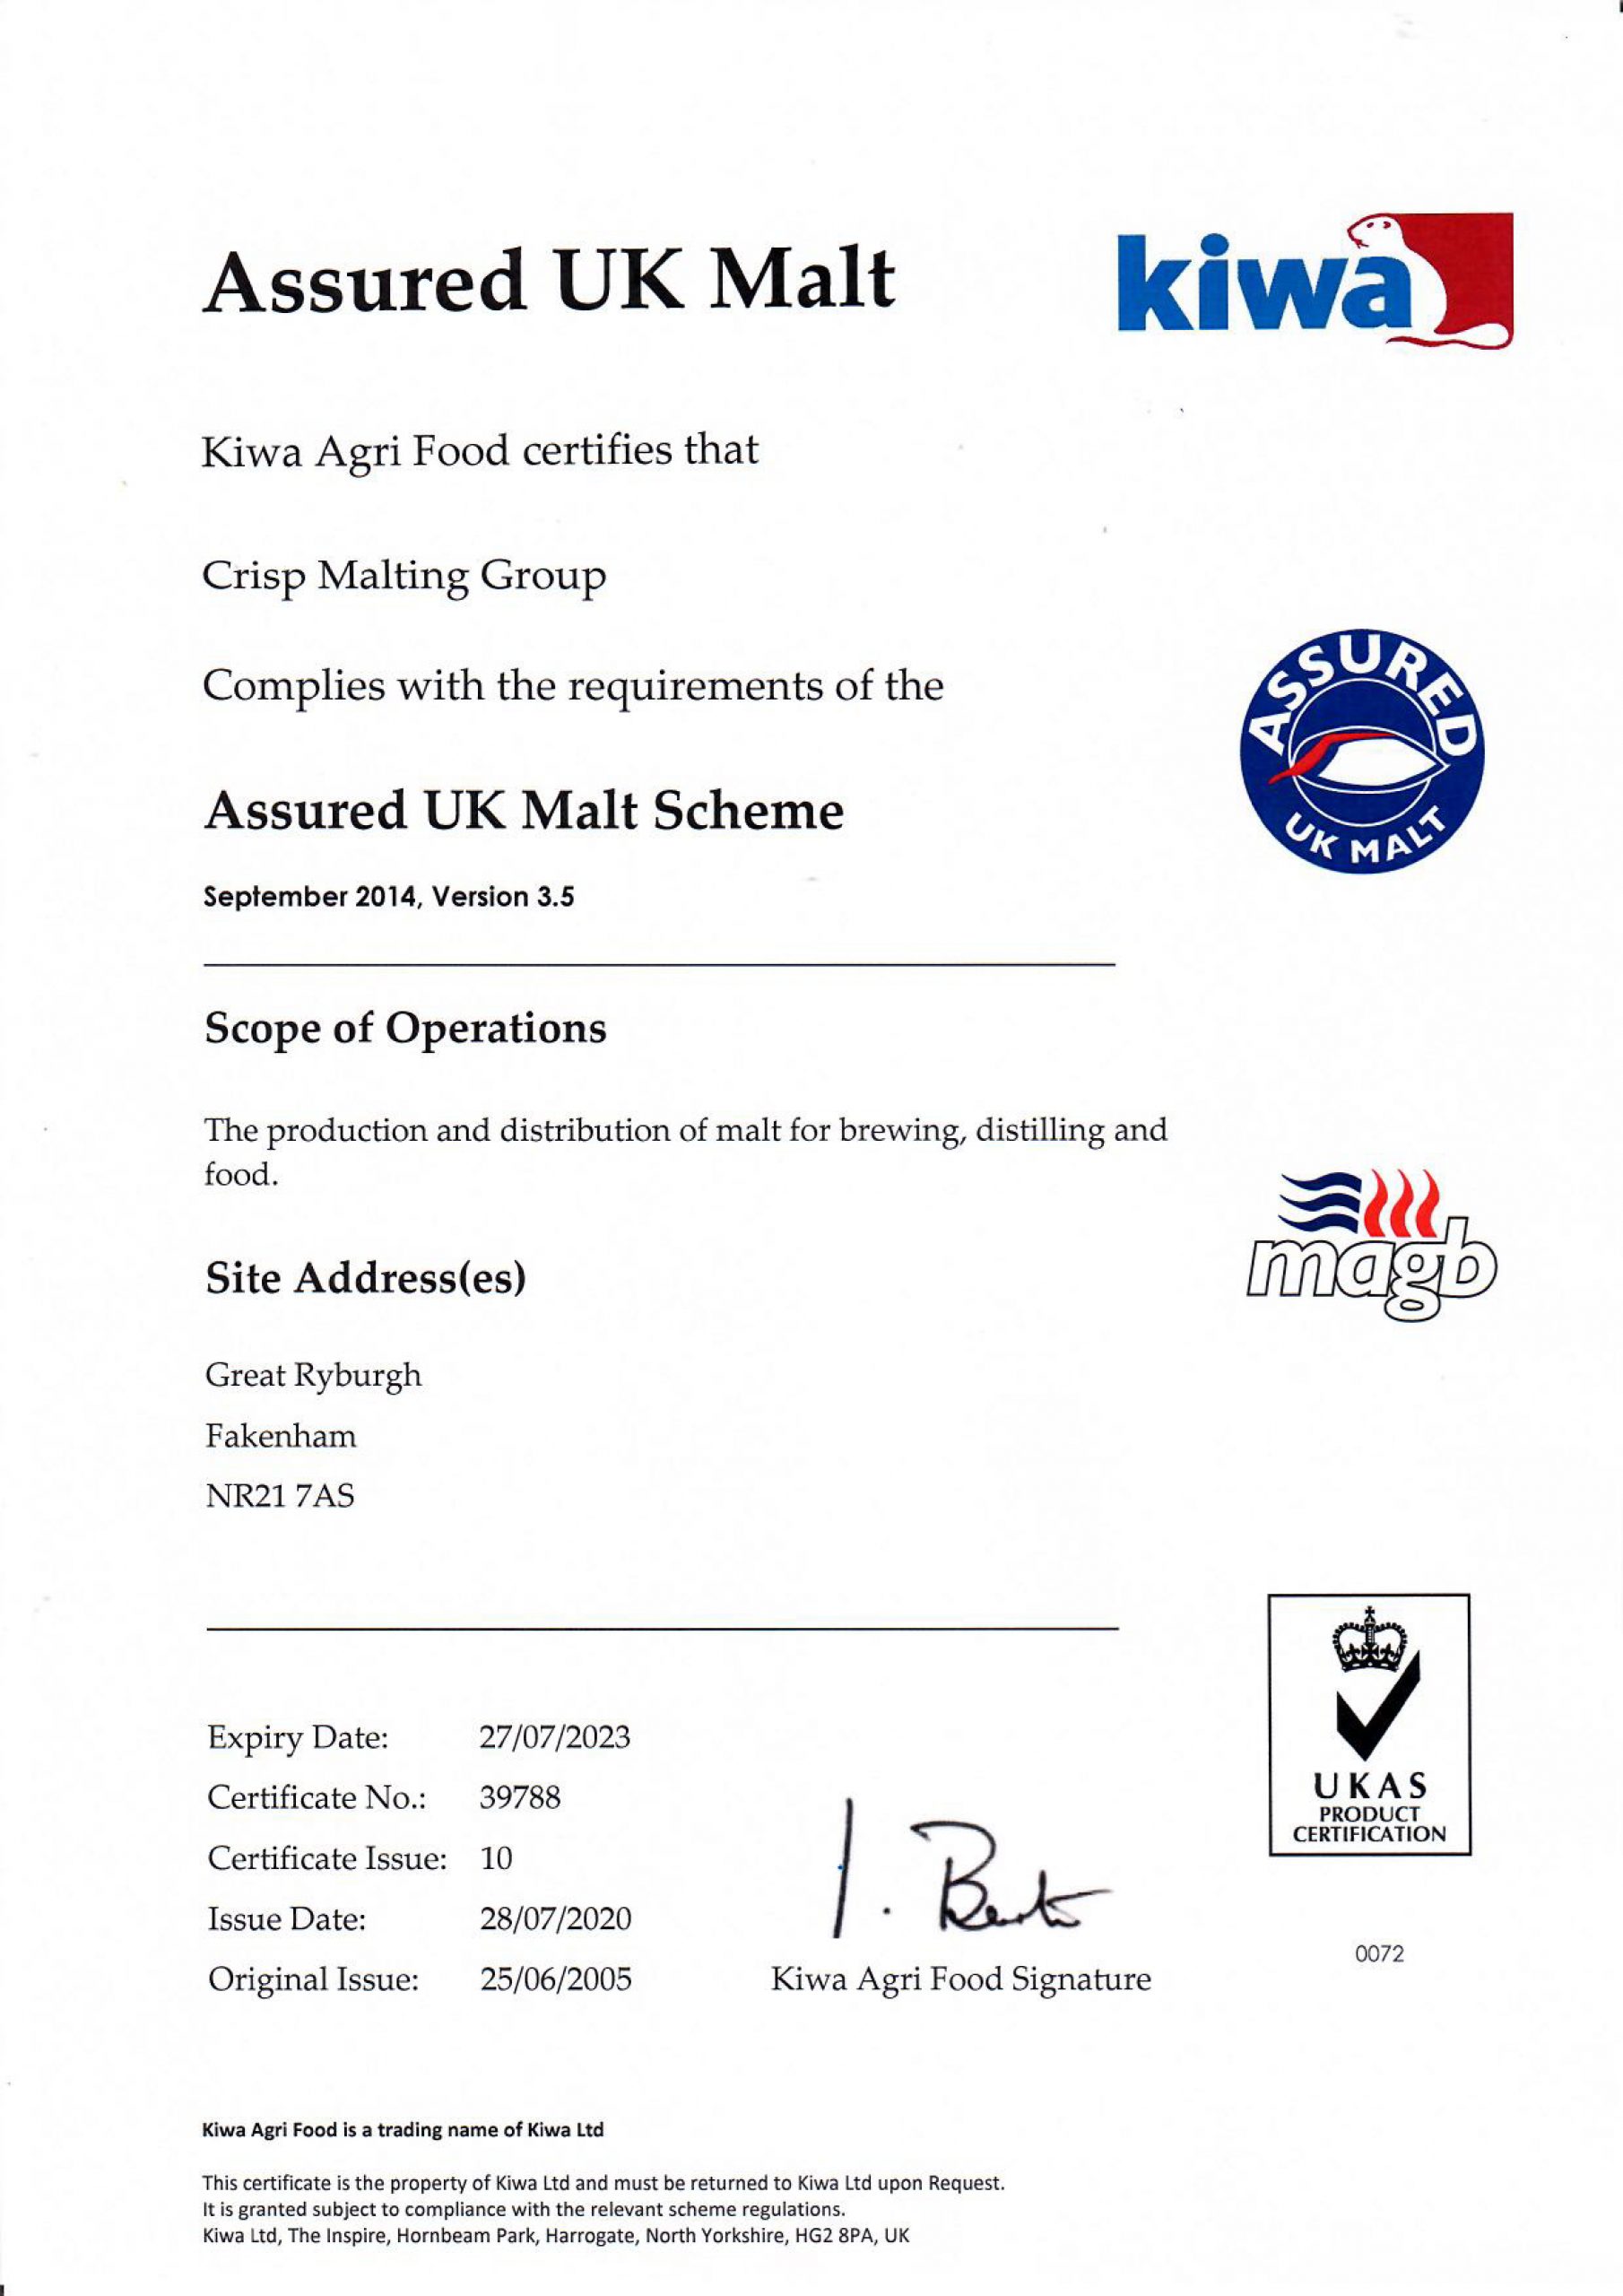 Assured UK Malt Certificate for Crisp Malt.